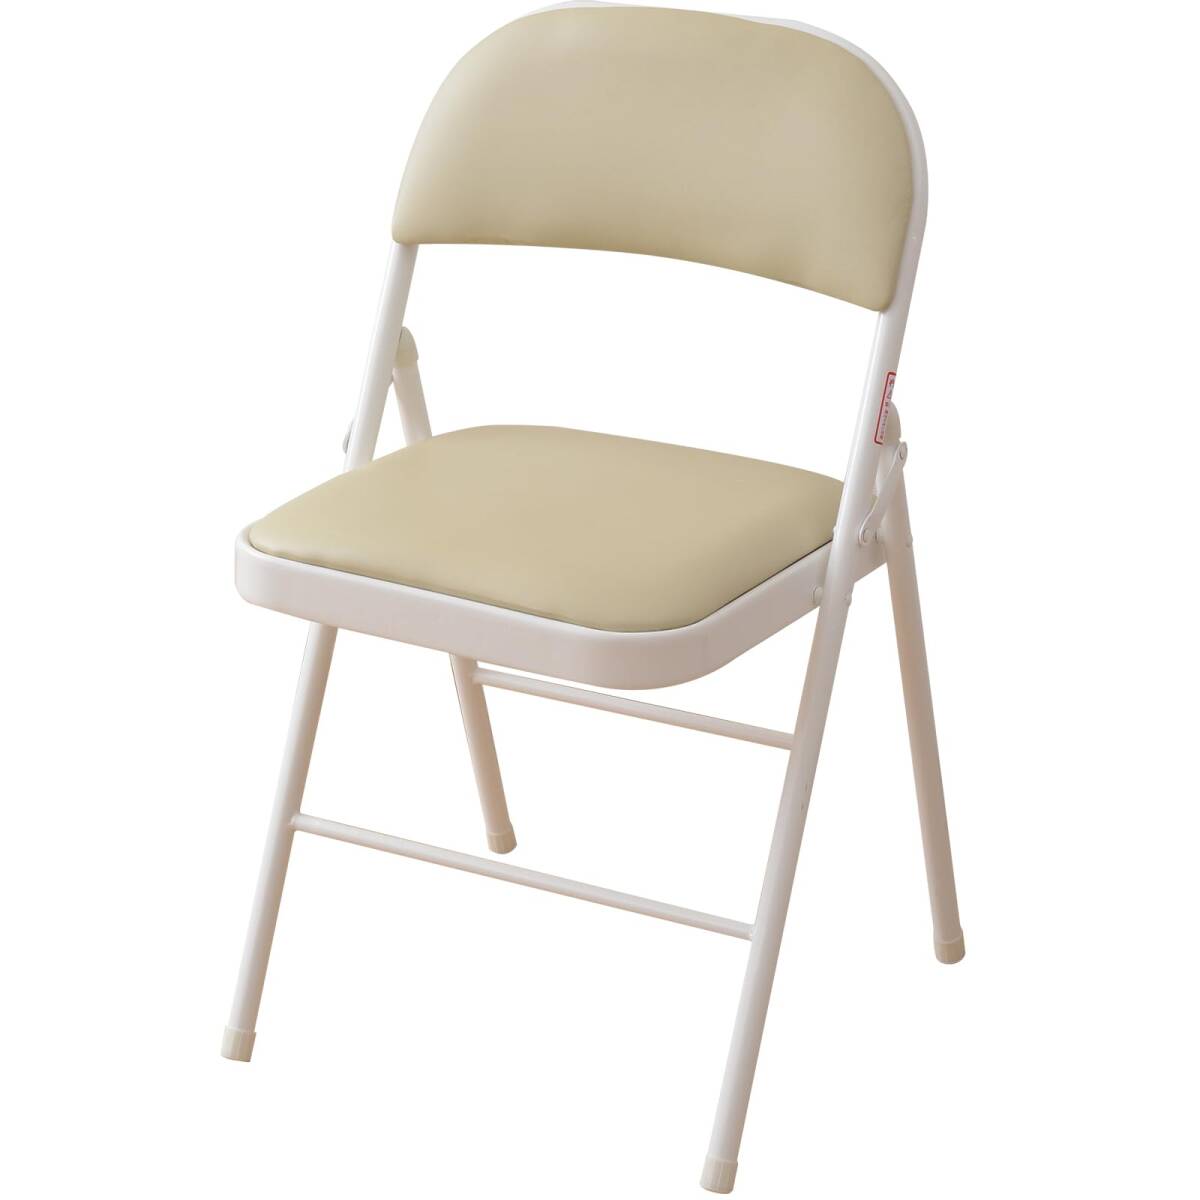 [山善] 折りたたみ パイプ 椅子 座面ゆったり39×39cm コンパクト収納 完成品 アイボリー/ホワイト YMC-22(IV/WH) 在宅勤_画像1